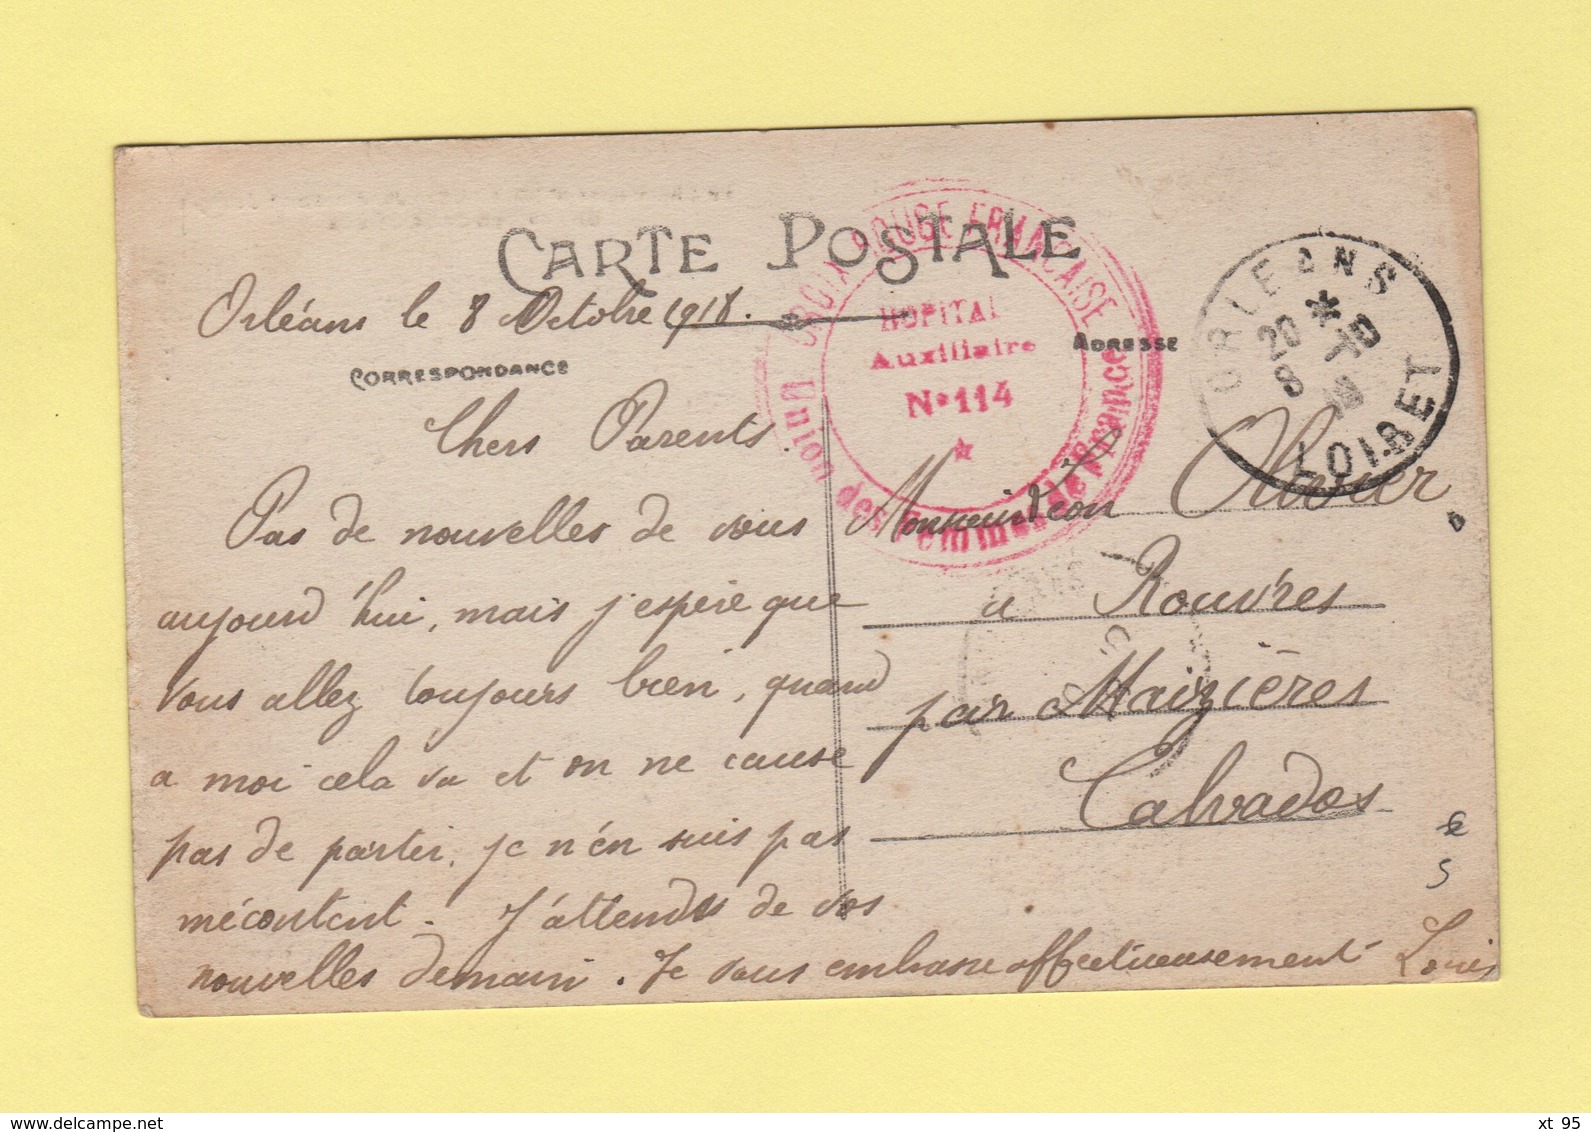 Hopital Auxiliaire N°114 - Orleans Loiret - 8-10-1918 - Croix Rouge Francaise - Guerre De 1939-45